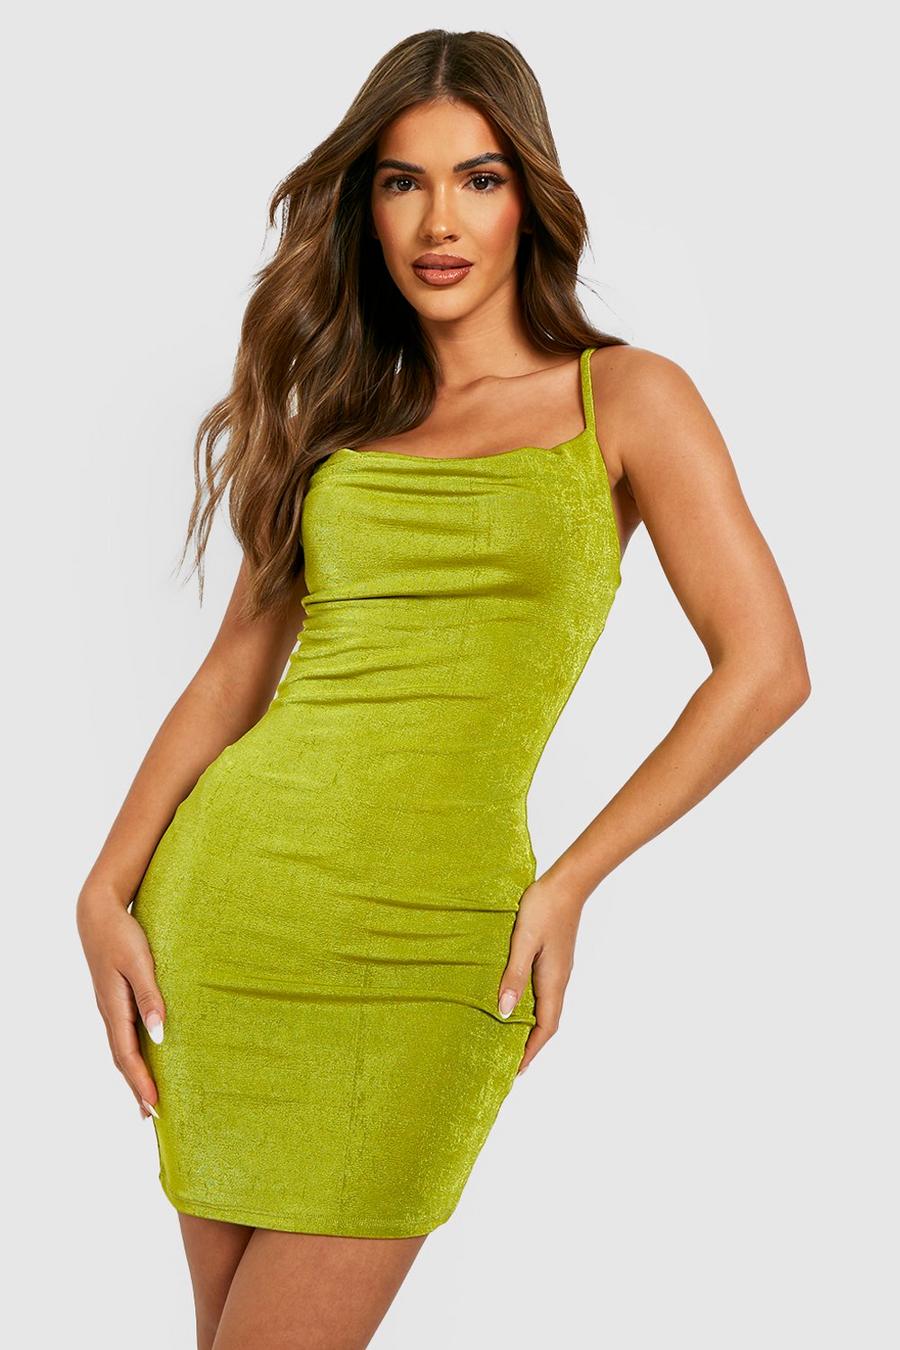 Olive grön Draperad glansig klänning med struktur